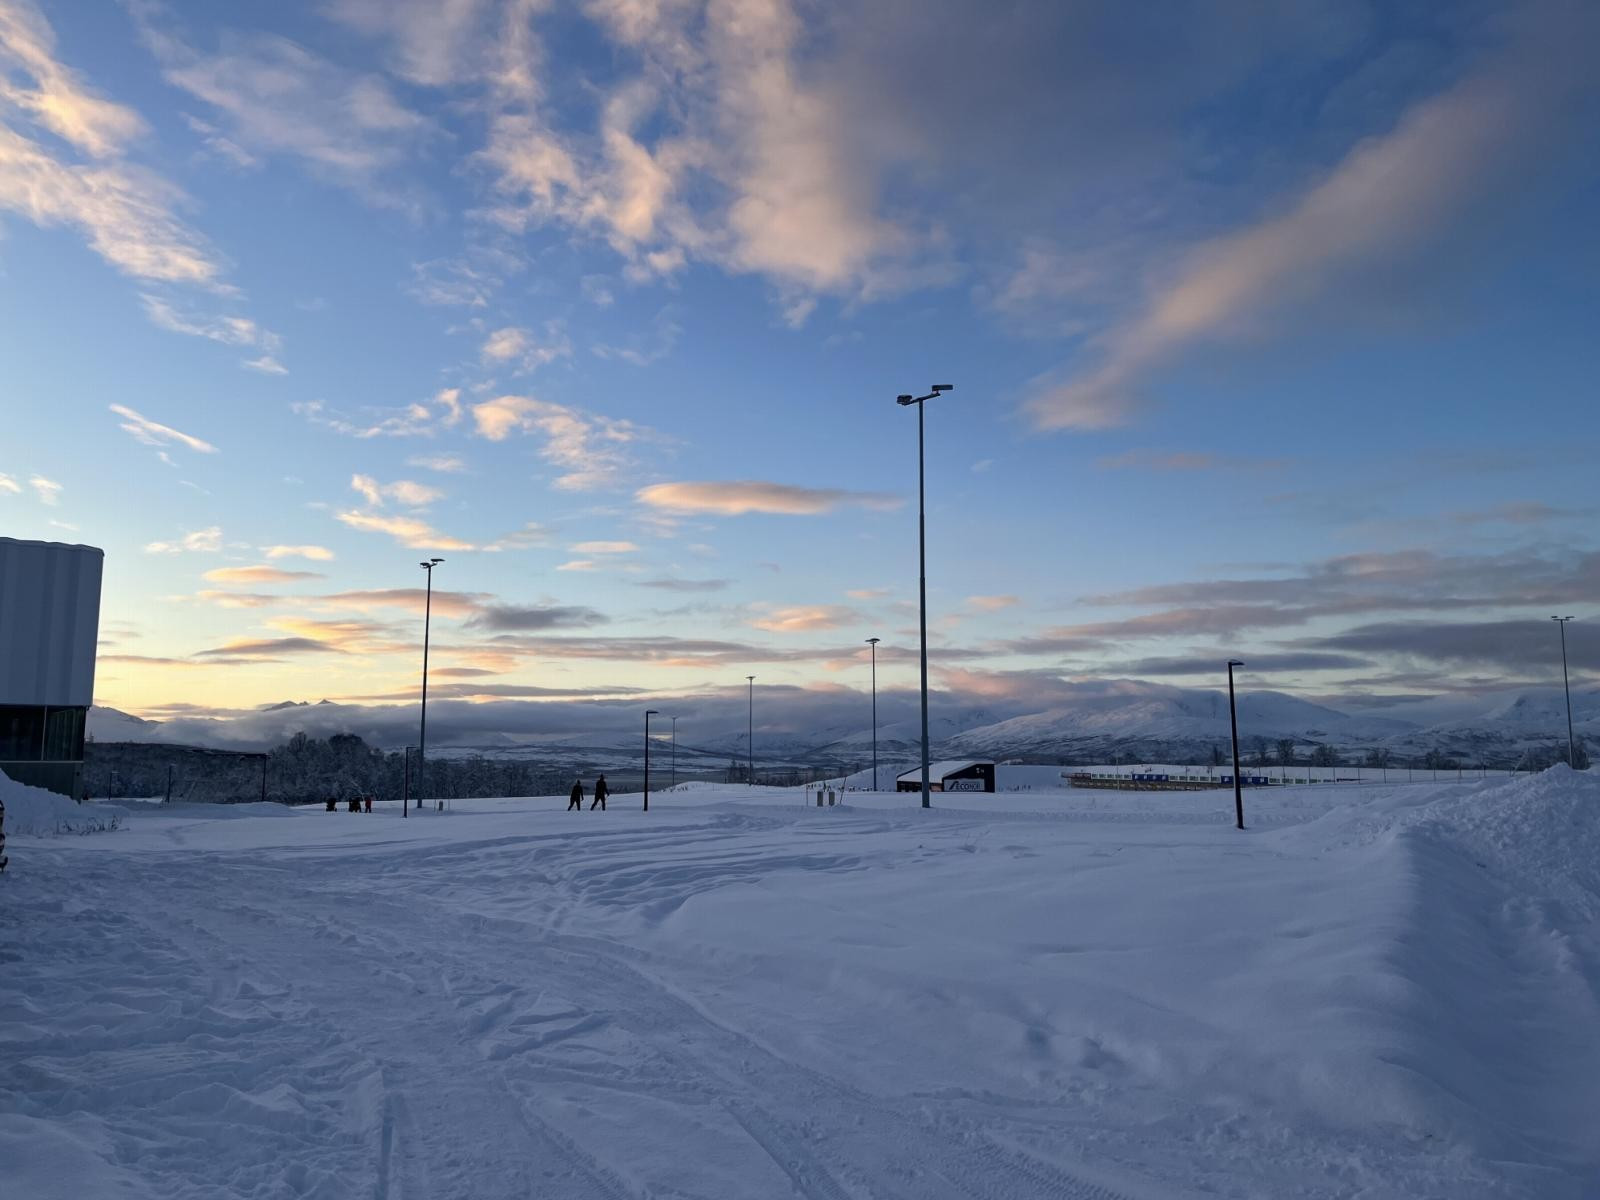 Rett i nærheten finner du blant annet lysløype, Tromsøbadet og Tromsø klatresenter.